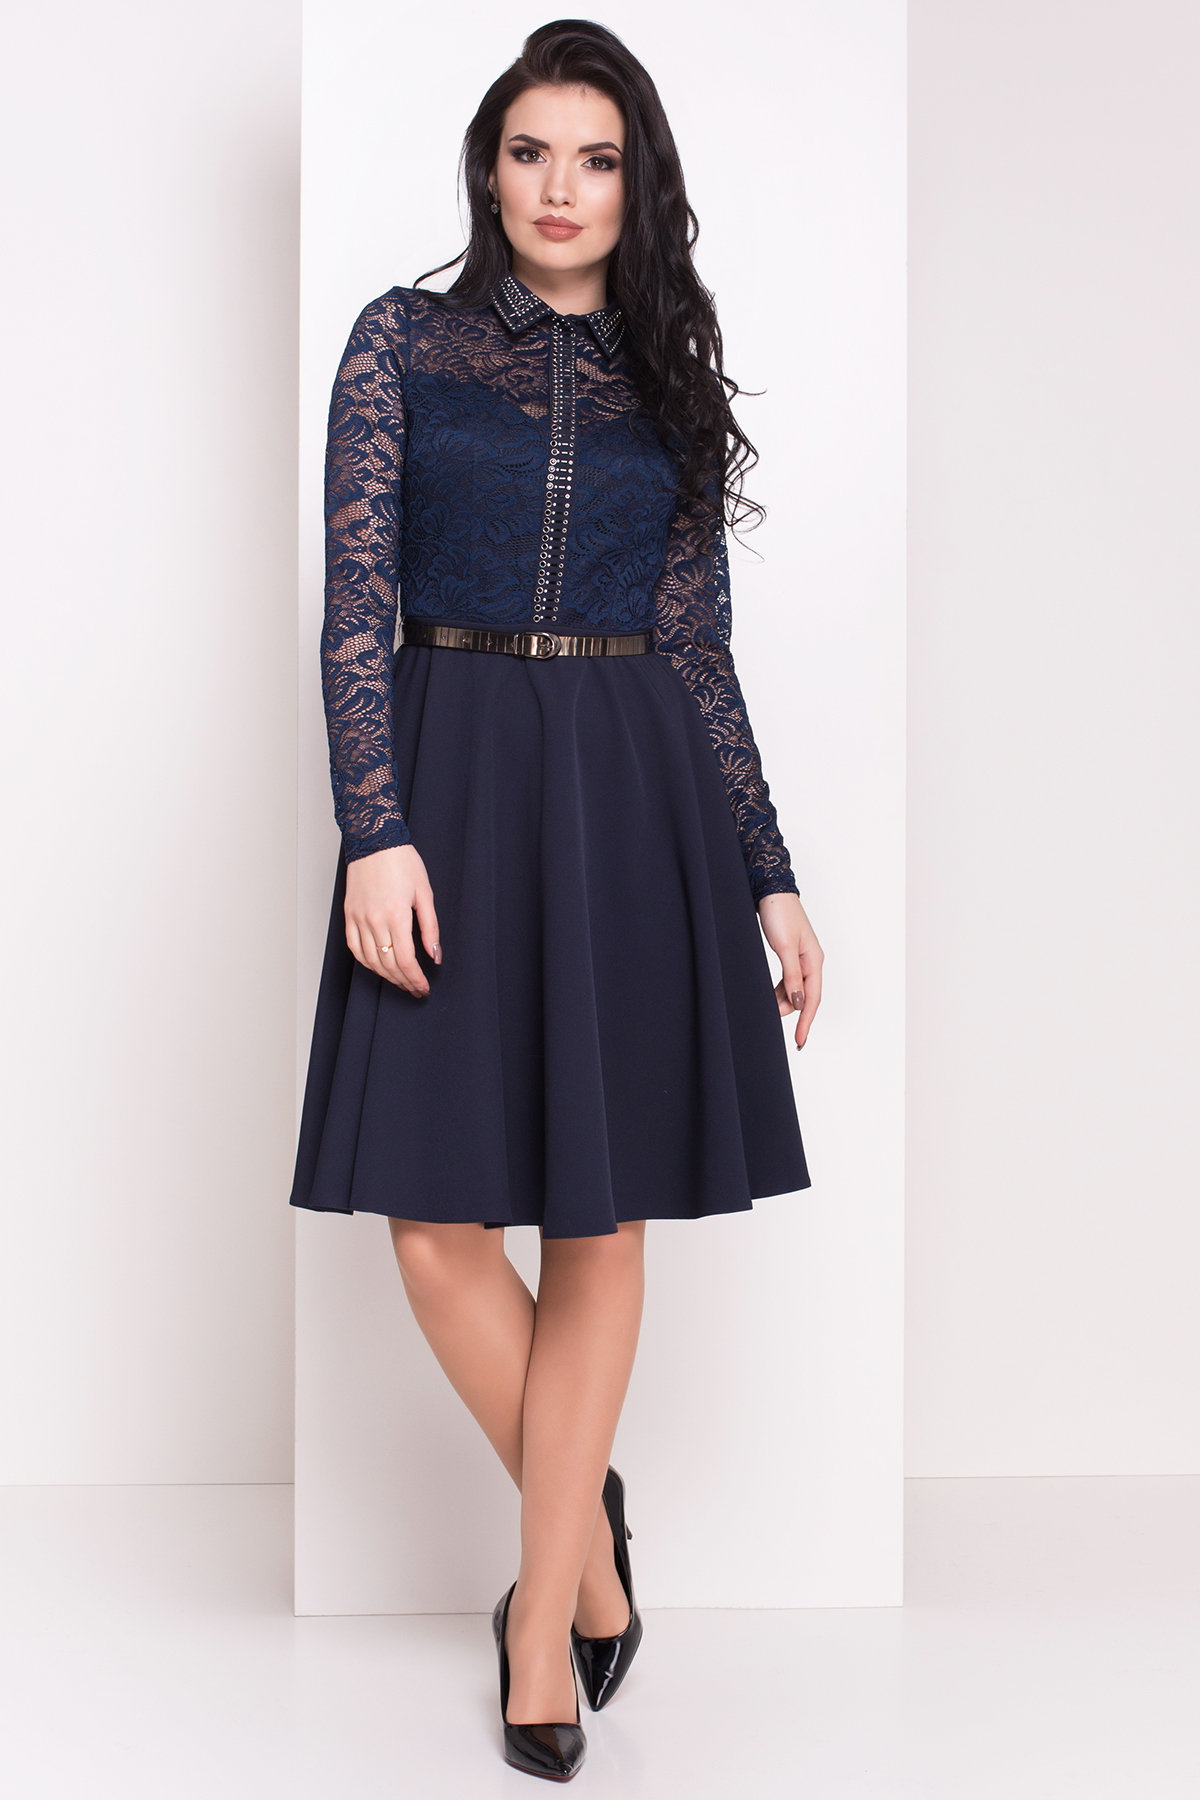 Платье с гипюровым верхом Элада 4188 Цвет: Темно-синий